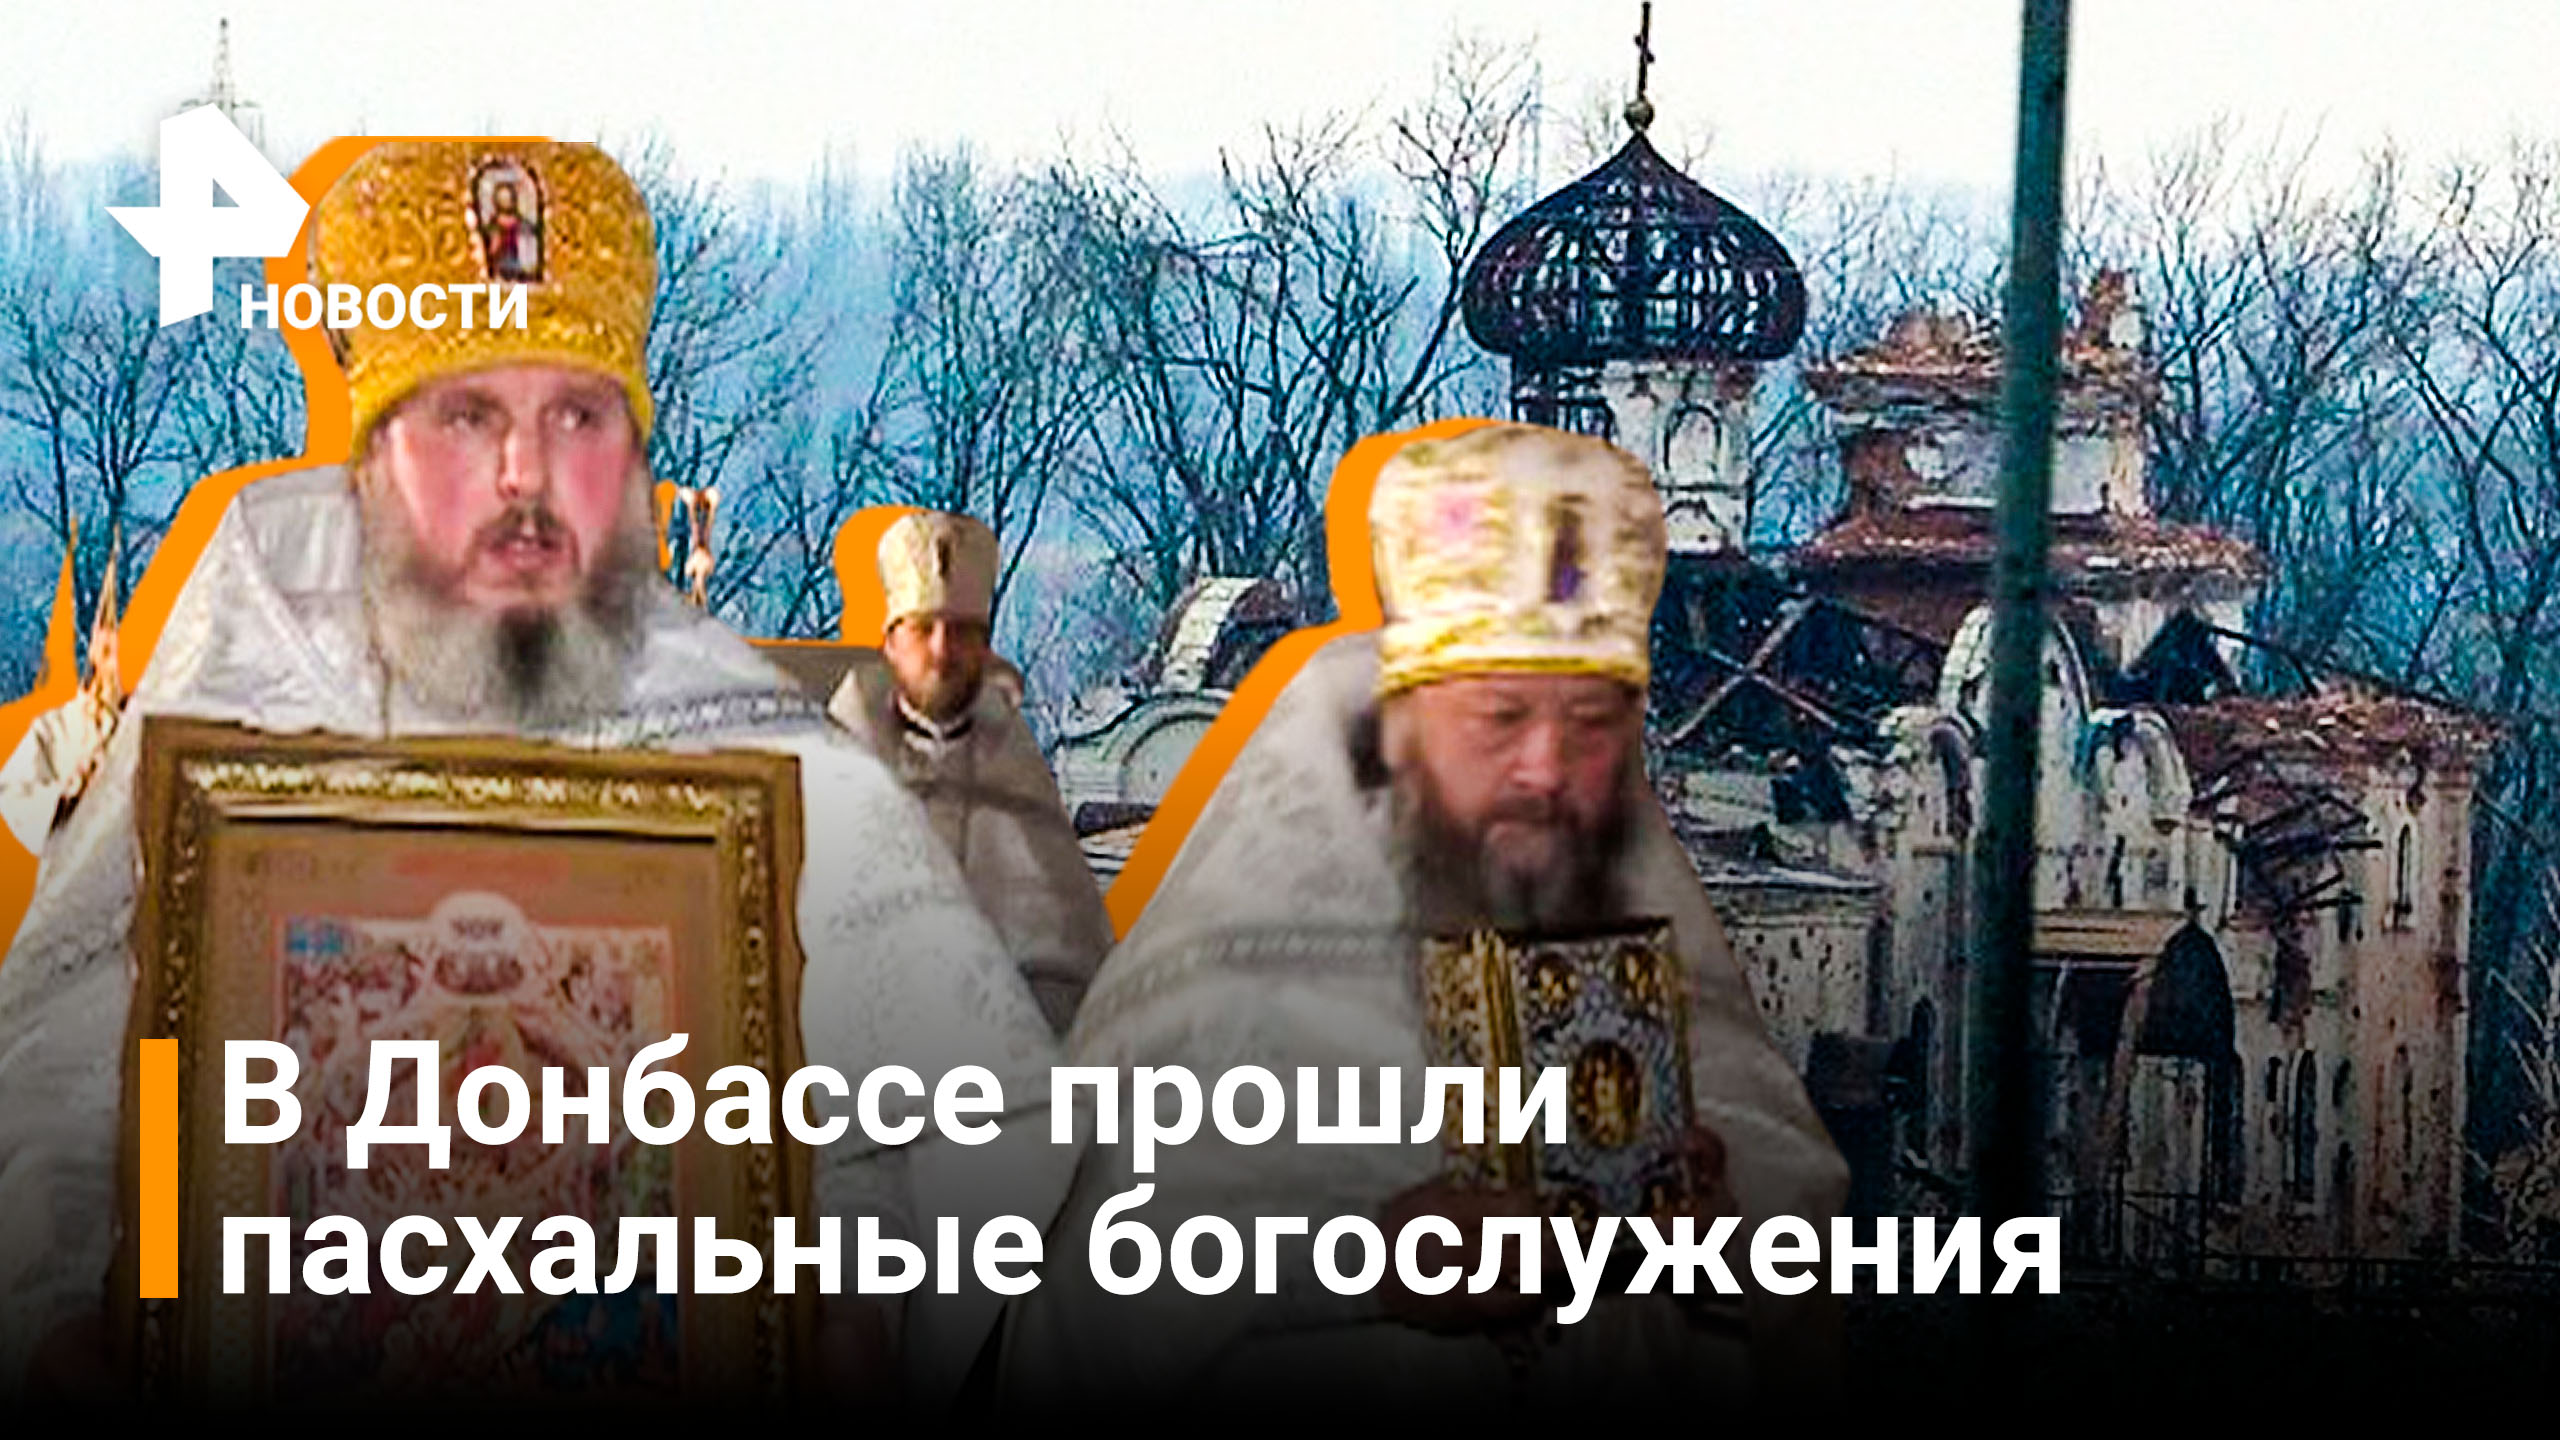 В храмах прошли пасхальные богослужения в Донбассе / РЕН Новости